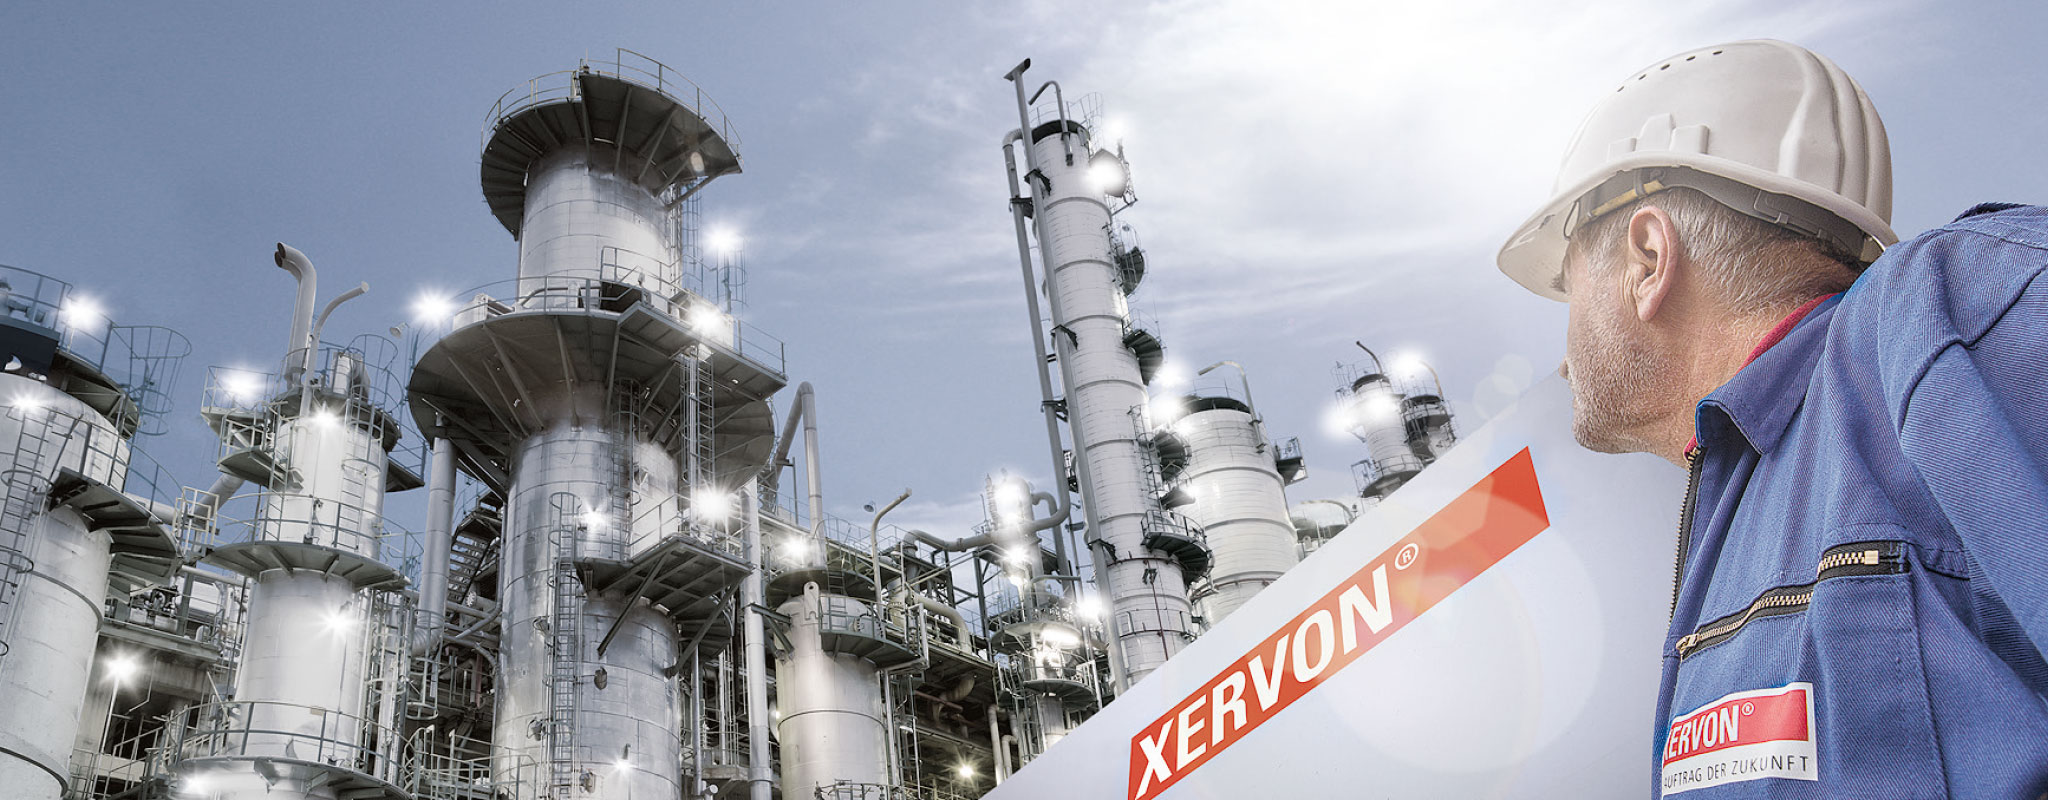 Spoločnosť XERVON sú odborníci na technické priemyselné služby a sú tým správnym partnerom pre vytváranie, ochranu a optimalizáciu hodnôt